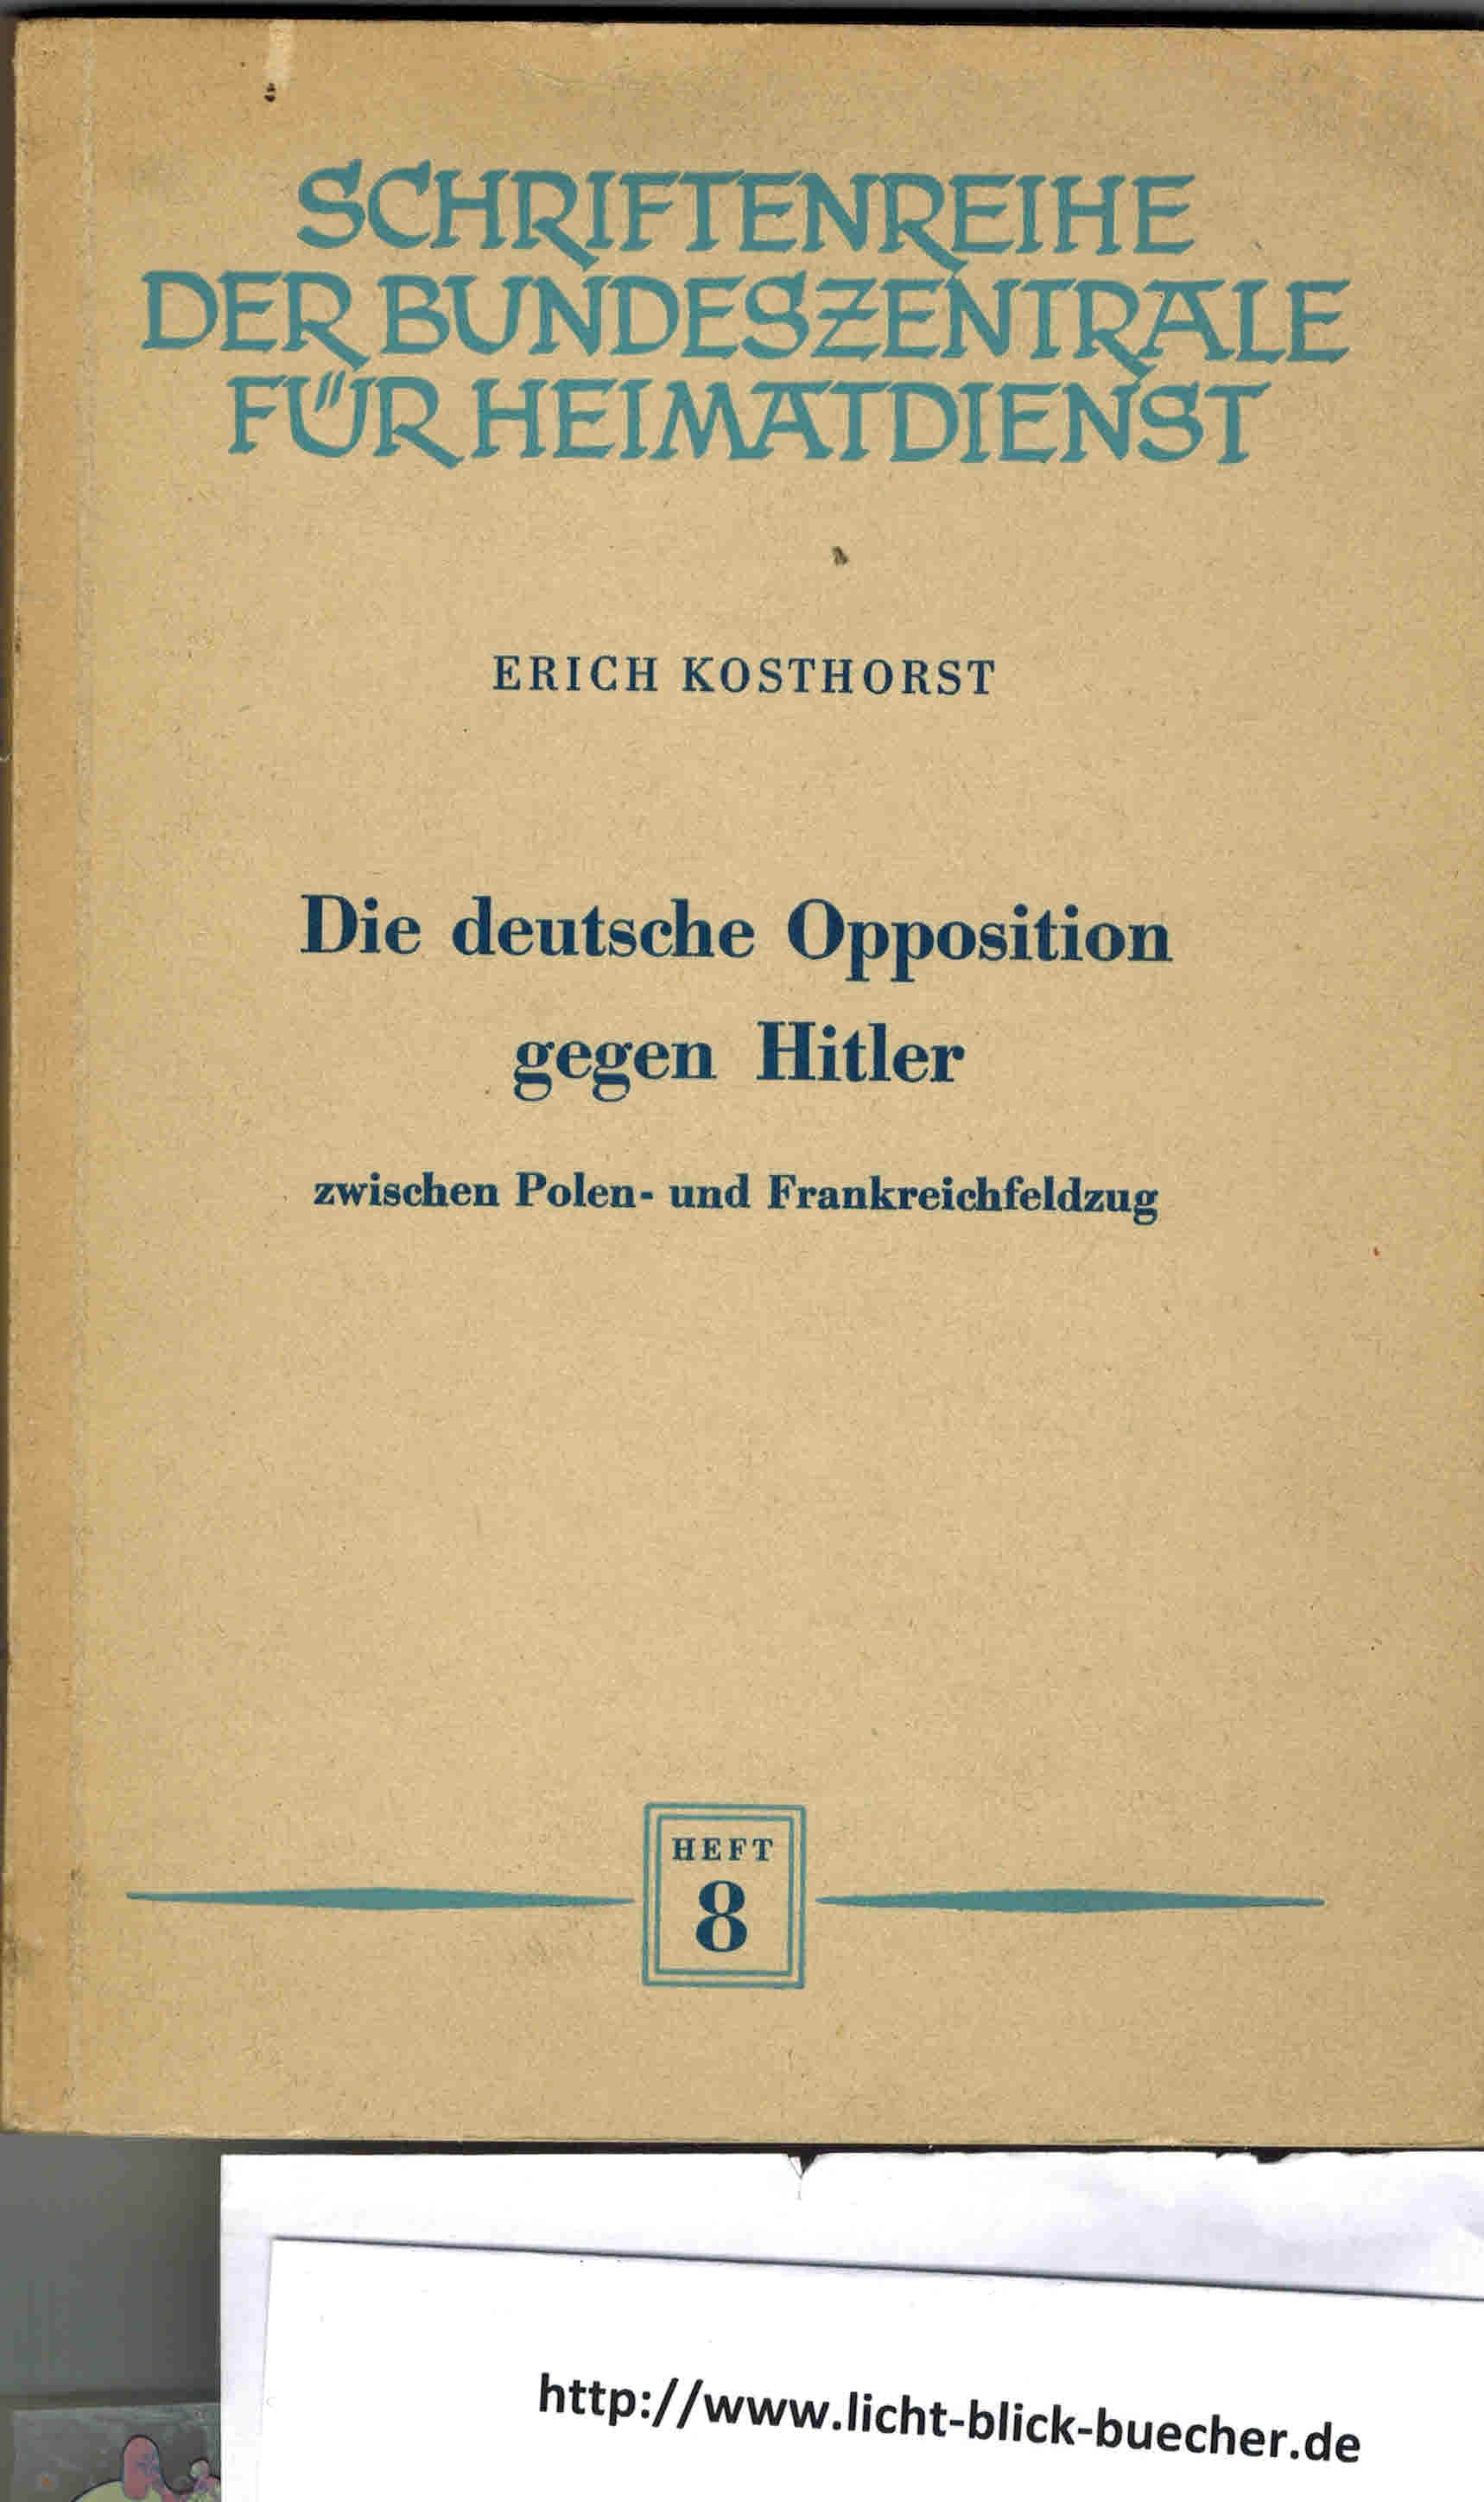 Die deutsche Opposition gegen Hitler - zwischen Polen -und FrankreichfeldzugErich Kosthorst ( Schriftenreihe der Bundeszentrale fuer Heimatdienst )